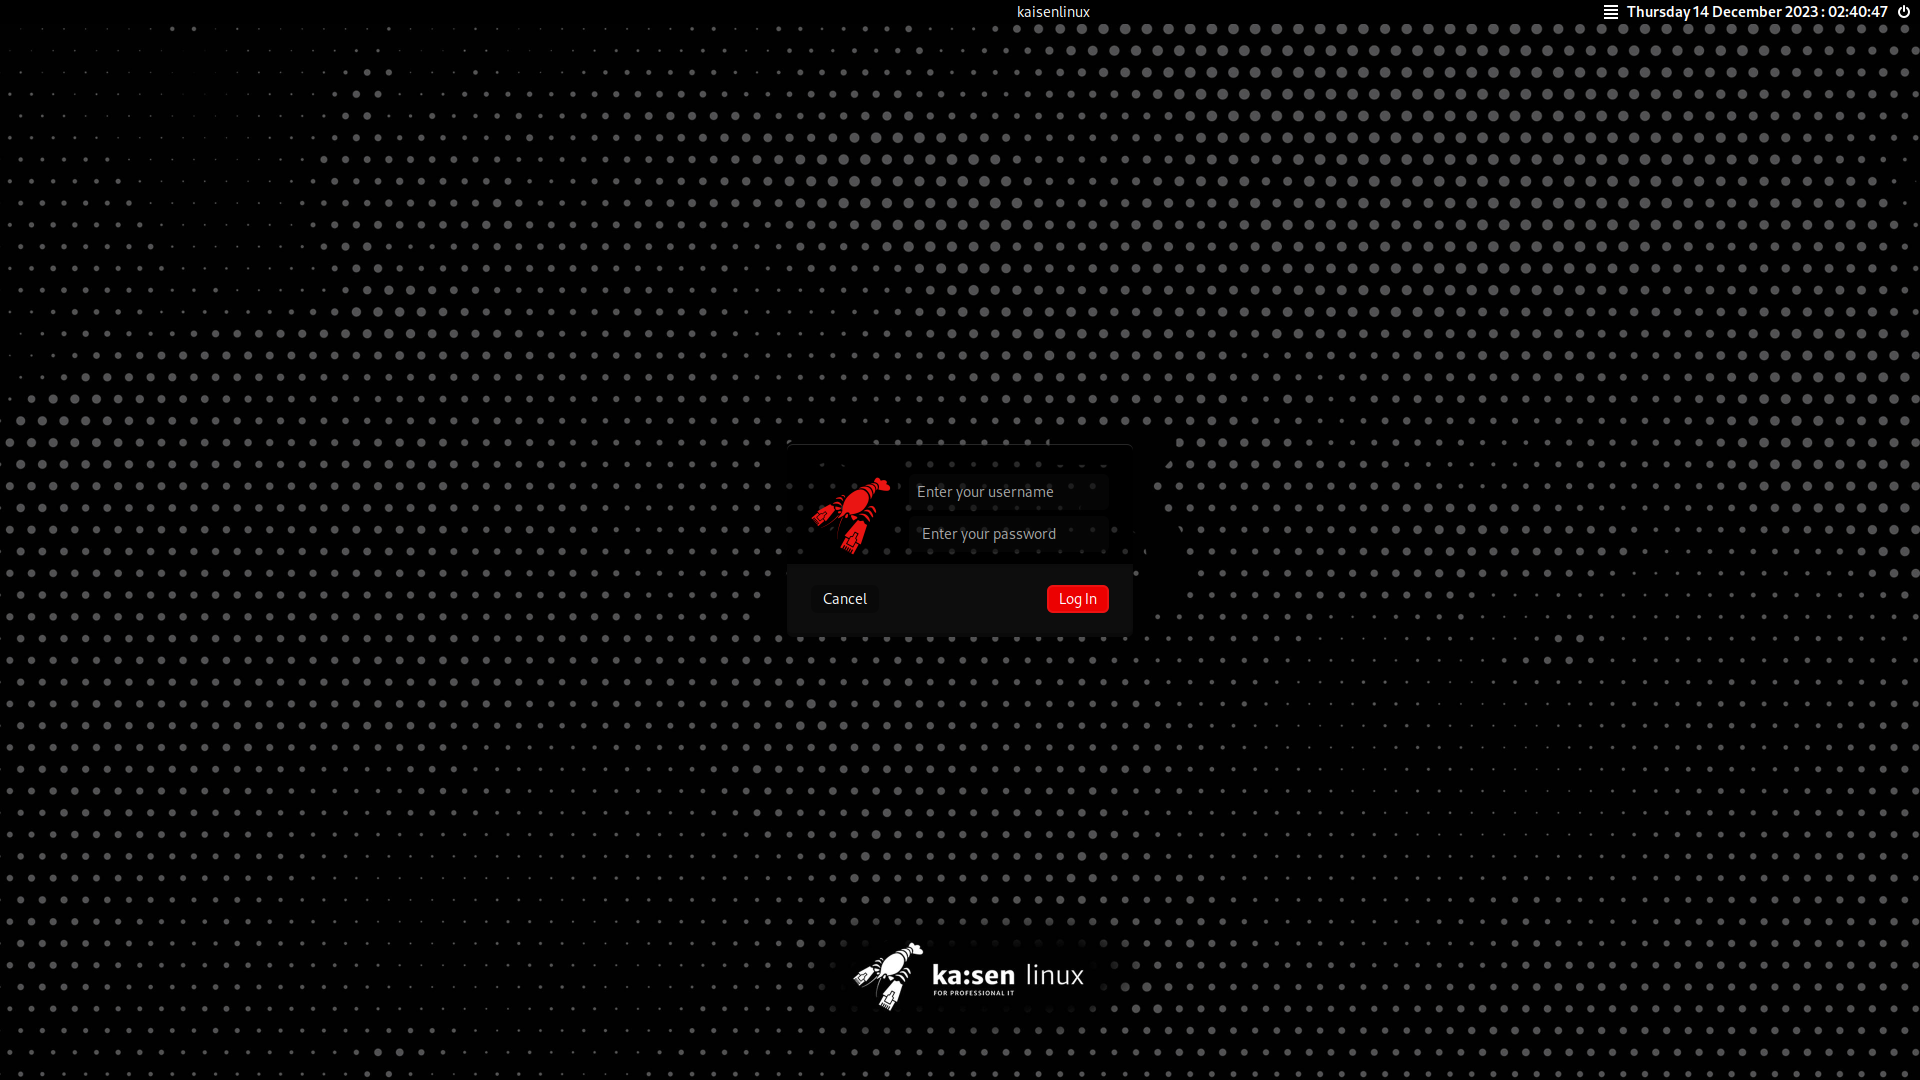 kaisen linux login screen